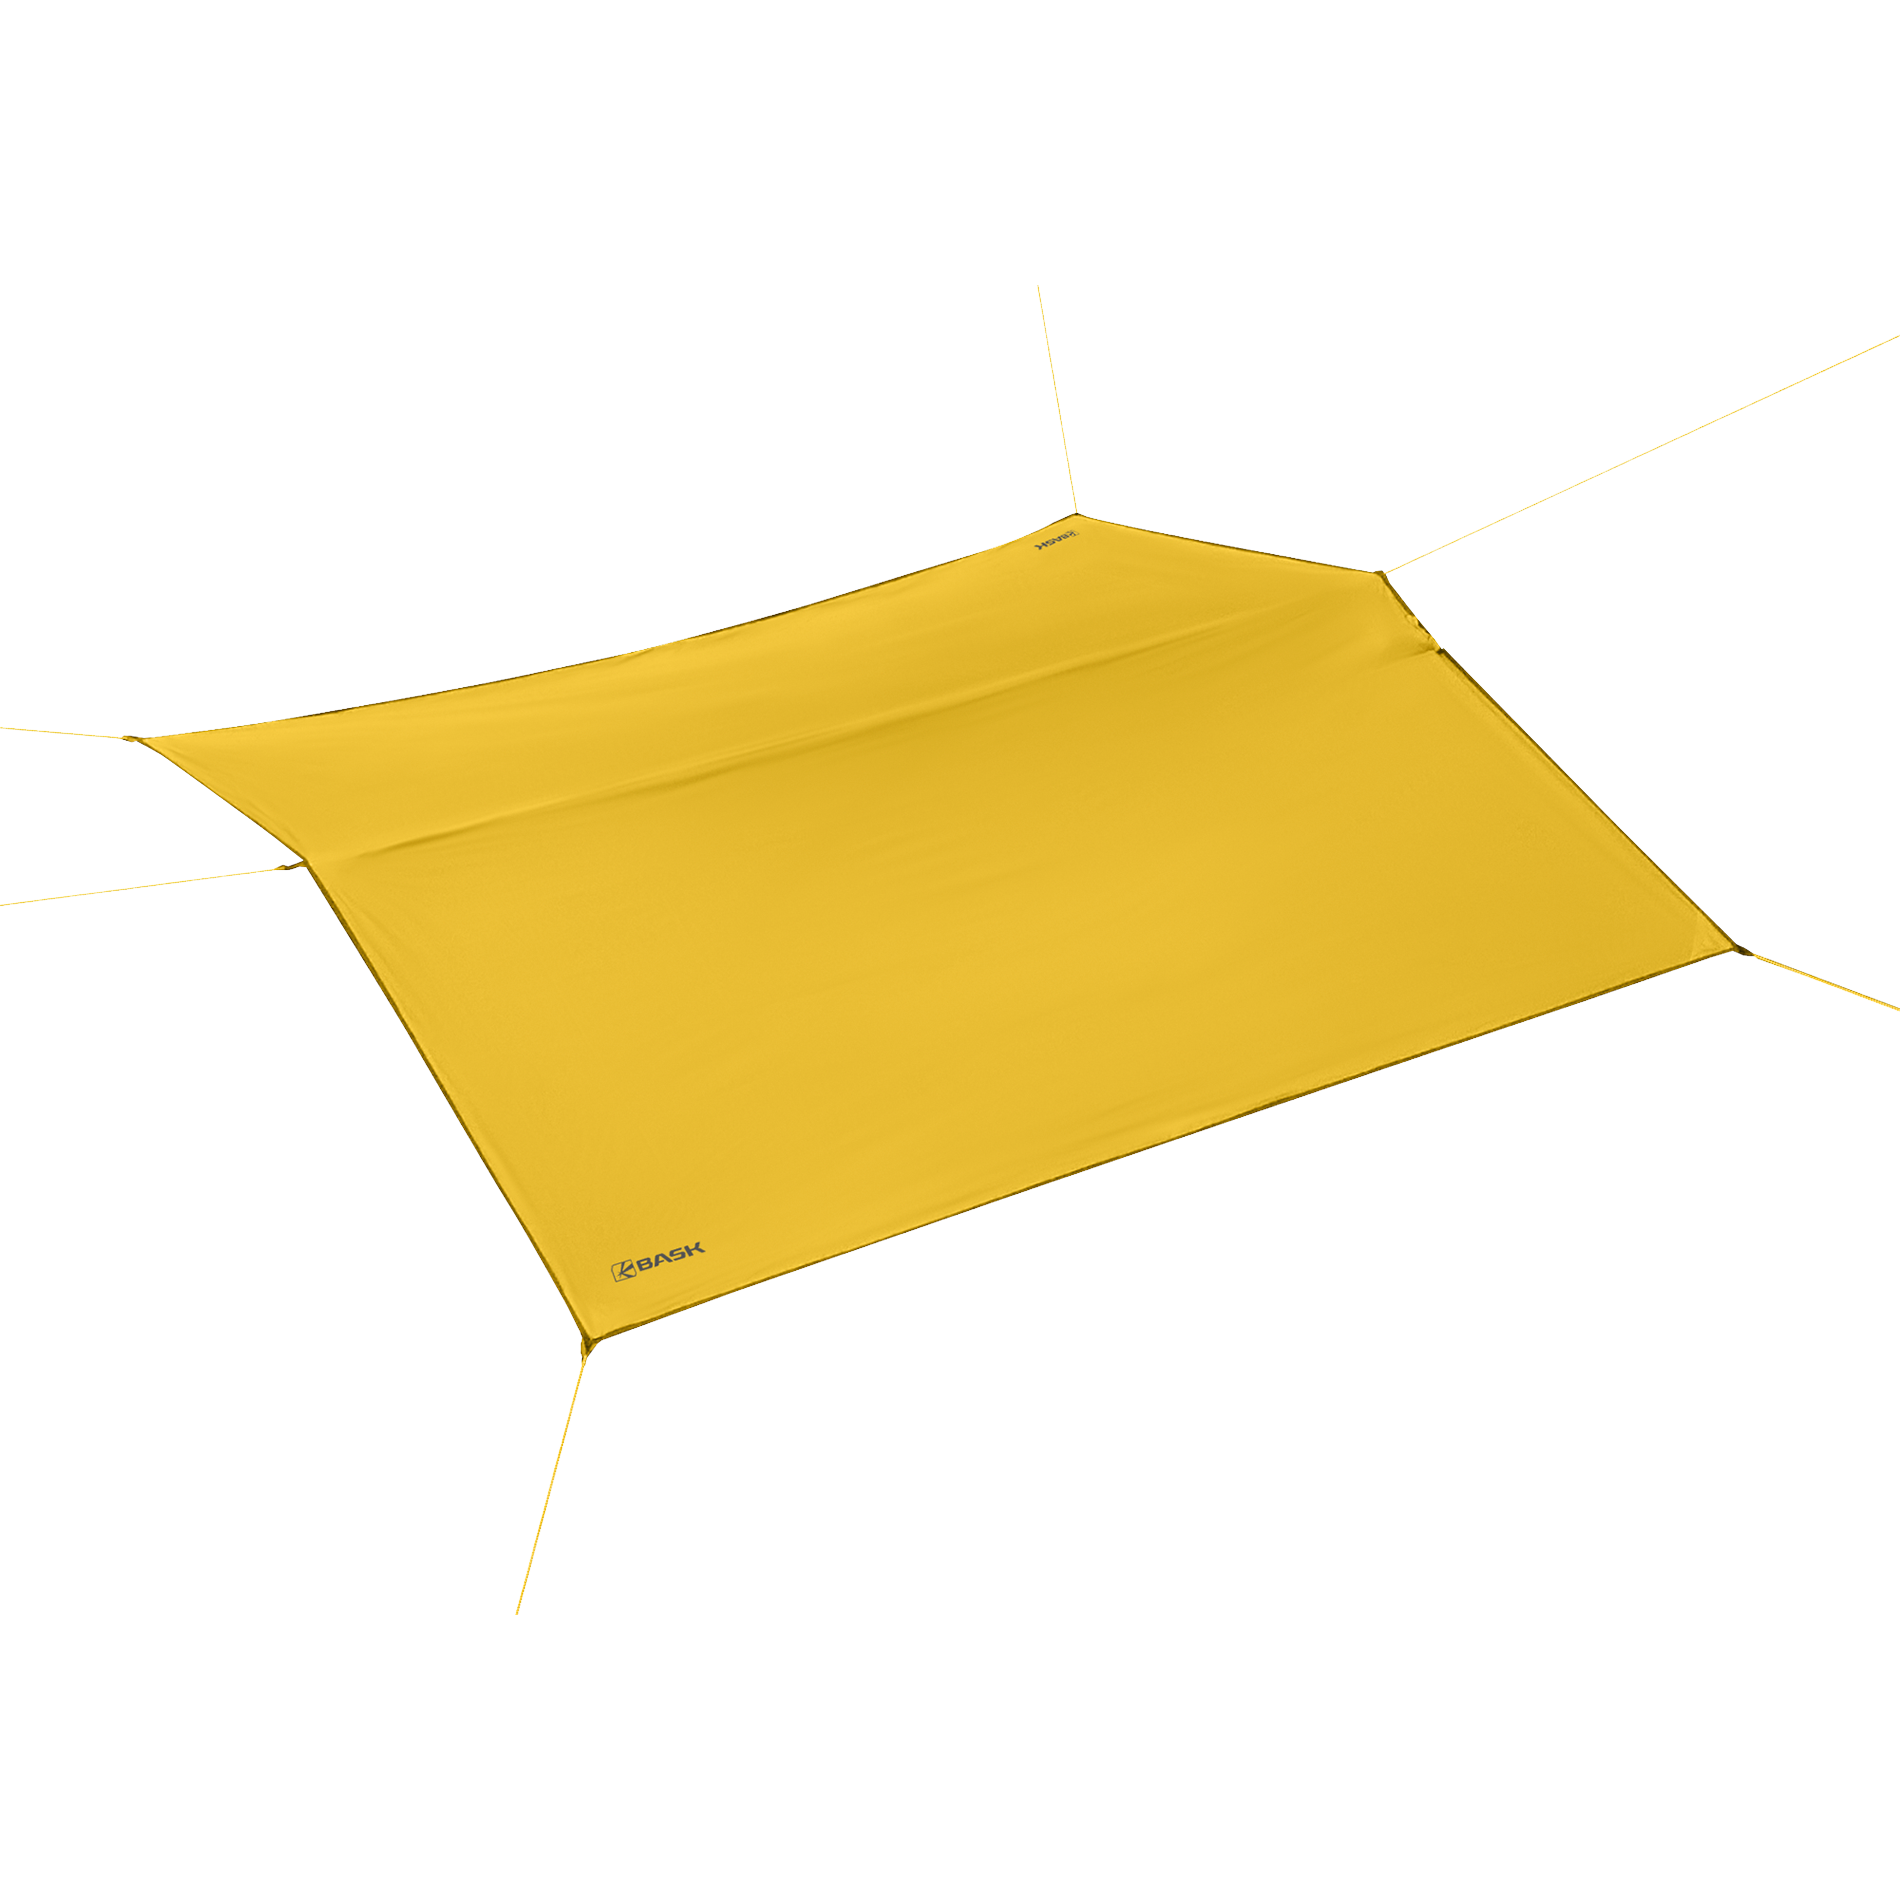 Туристический тент BASK, размер 300x300, цвет желтый 3522S-9105 CANOPY SILICONE 3x3 - фото 1